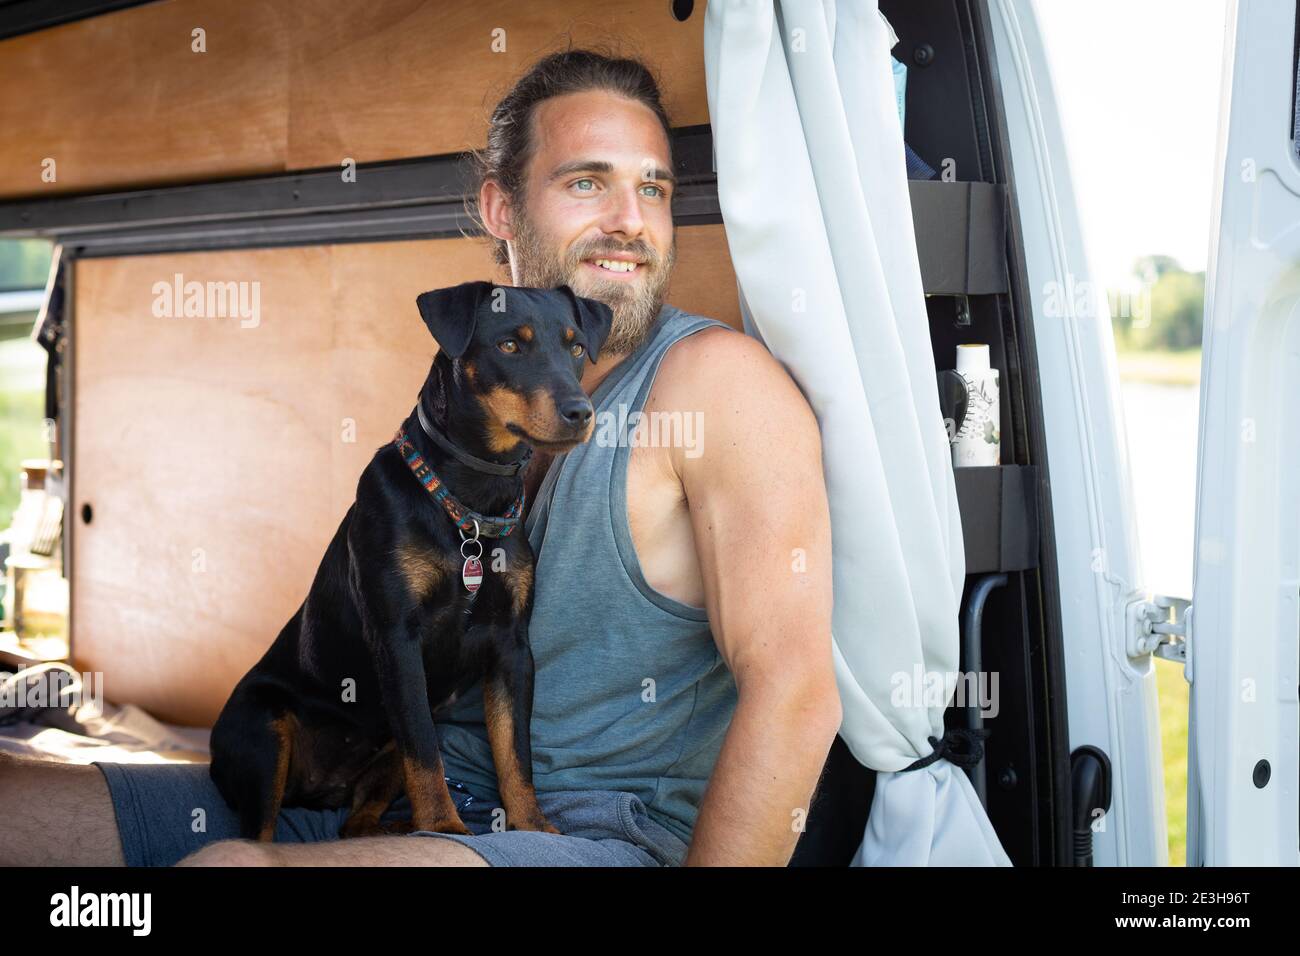 El hombre y su perro mirando fuera de una furgoneta campista Foto de stock